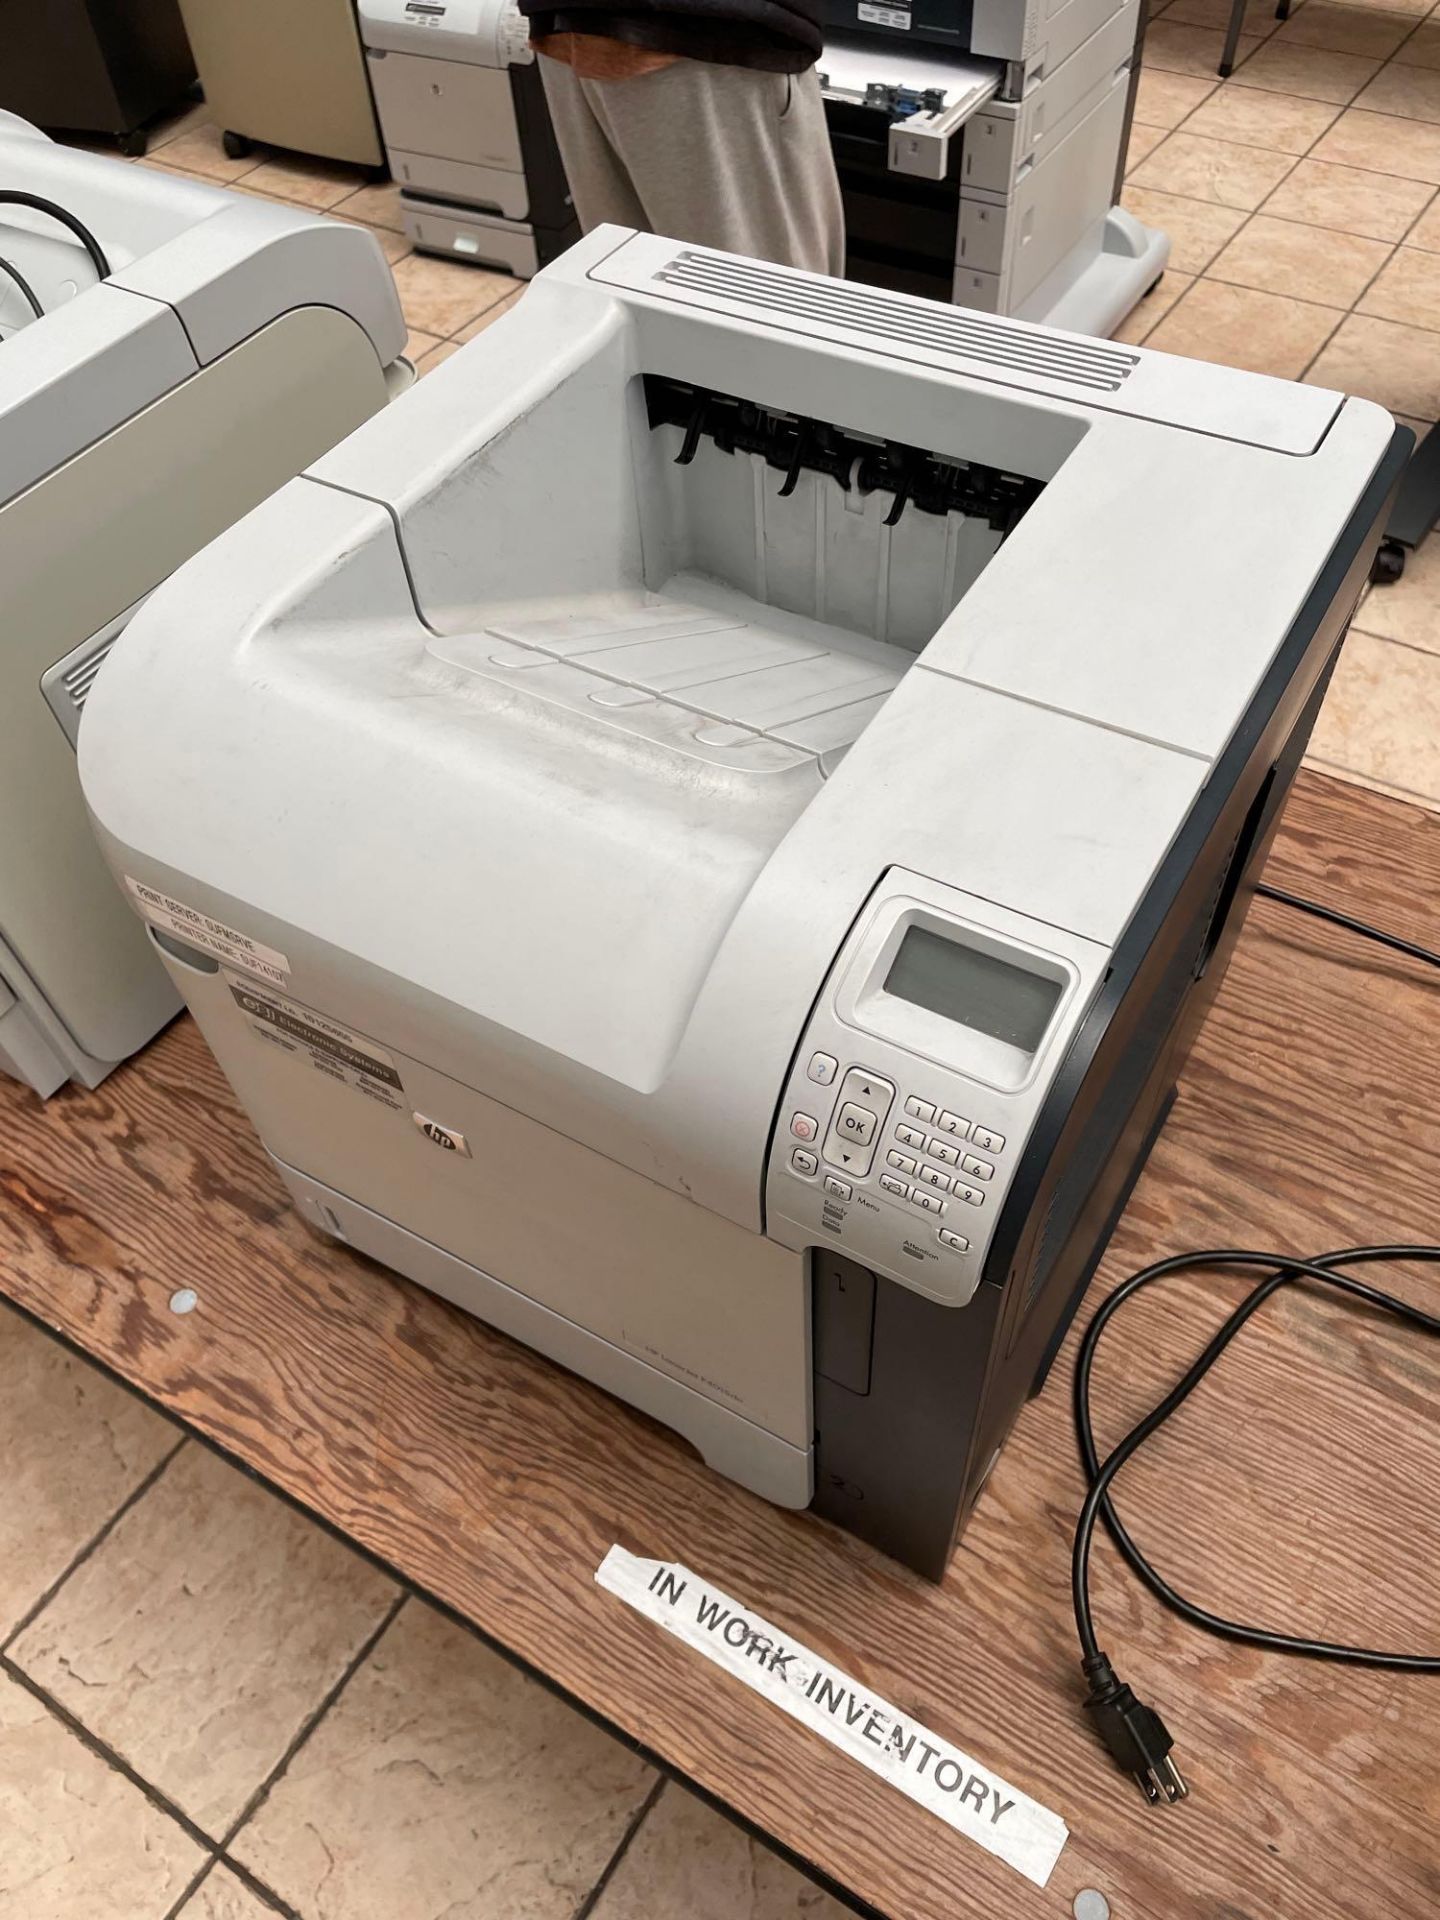 HP LaserJet P4015dn Printer - Image 2 of 3